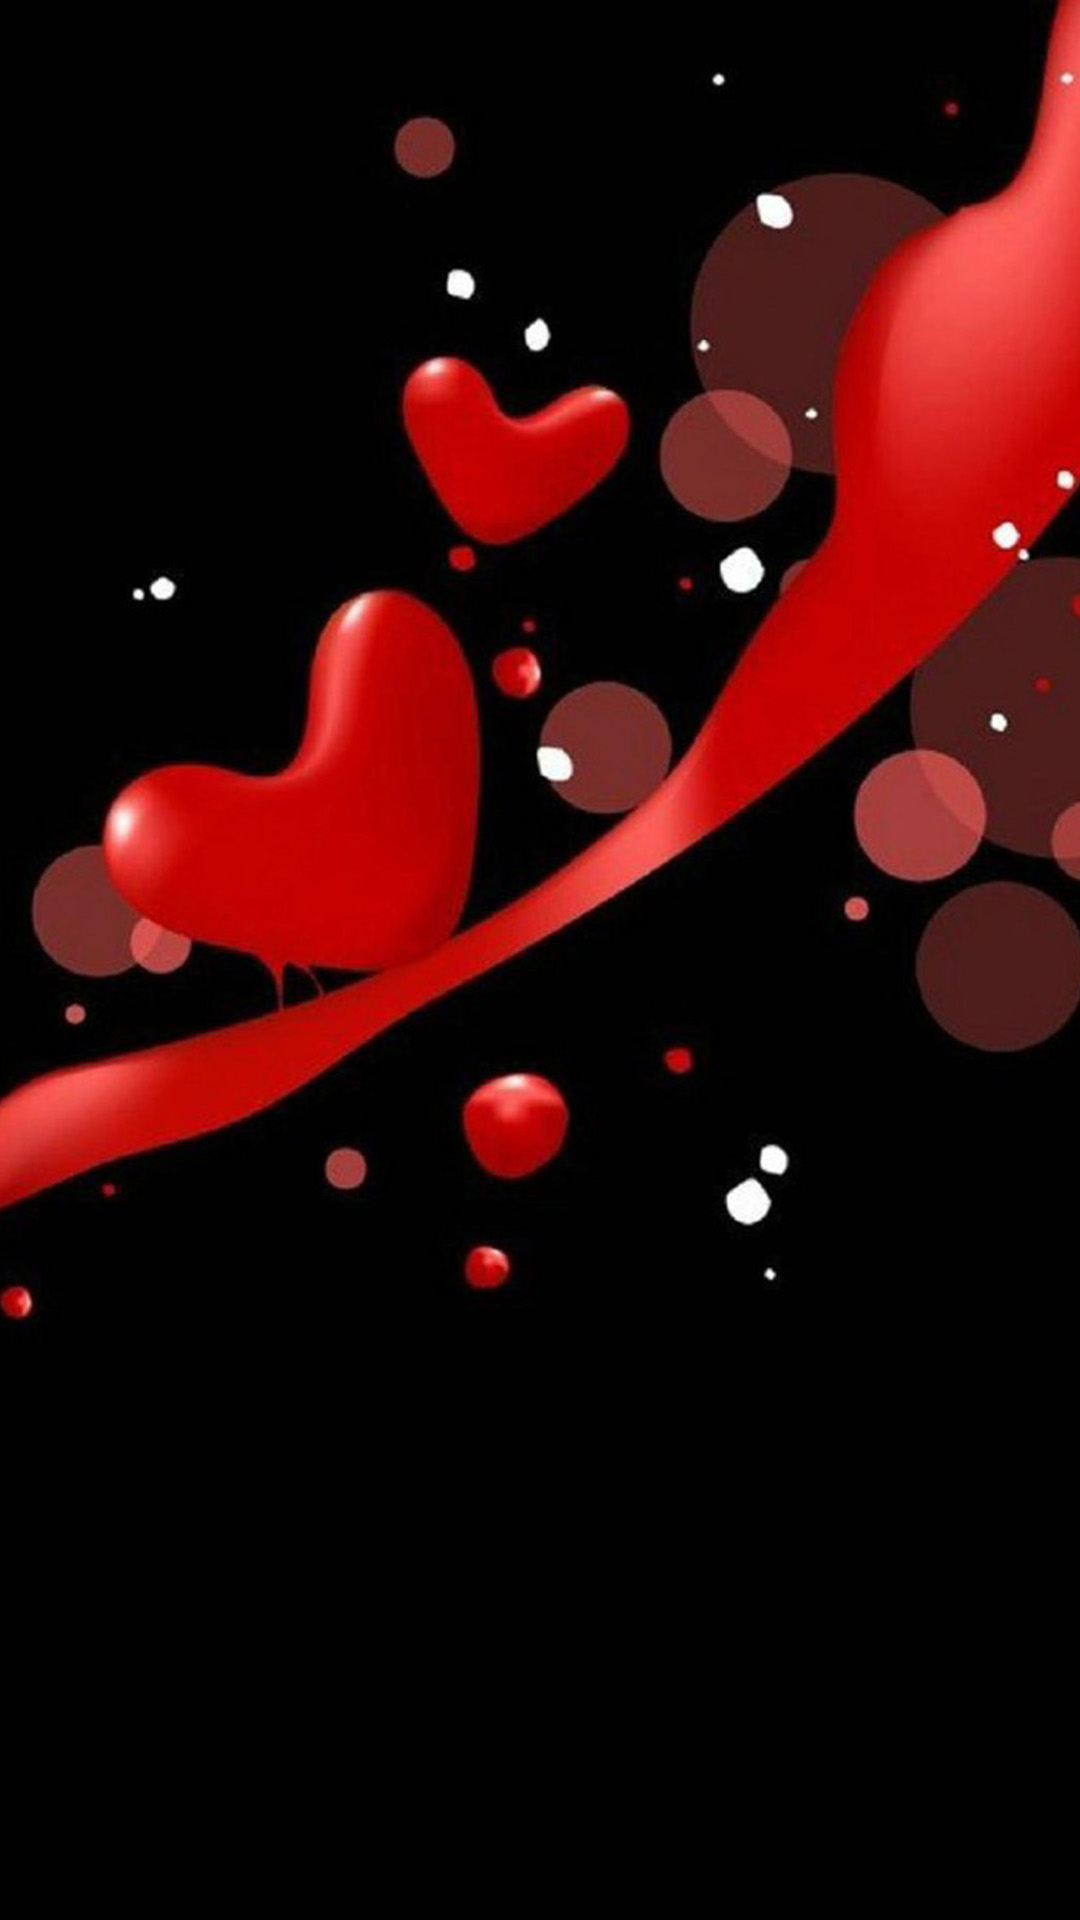 로맨틱 벽지,빨간,심장,사랑,발렌타인 데이,꽃잎